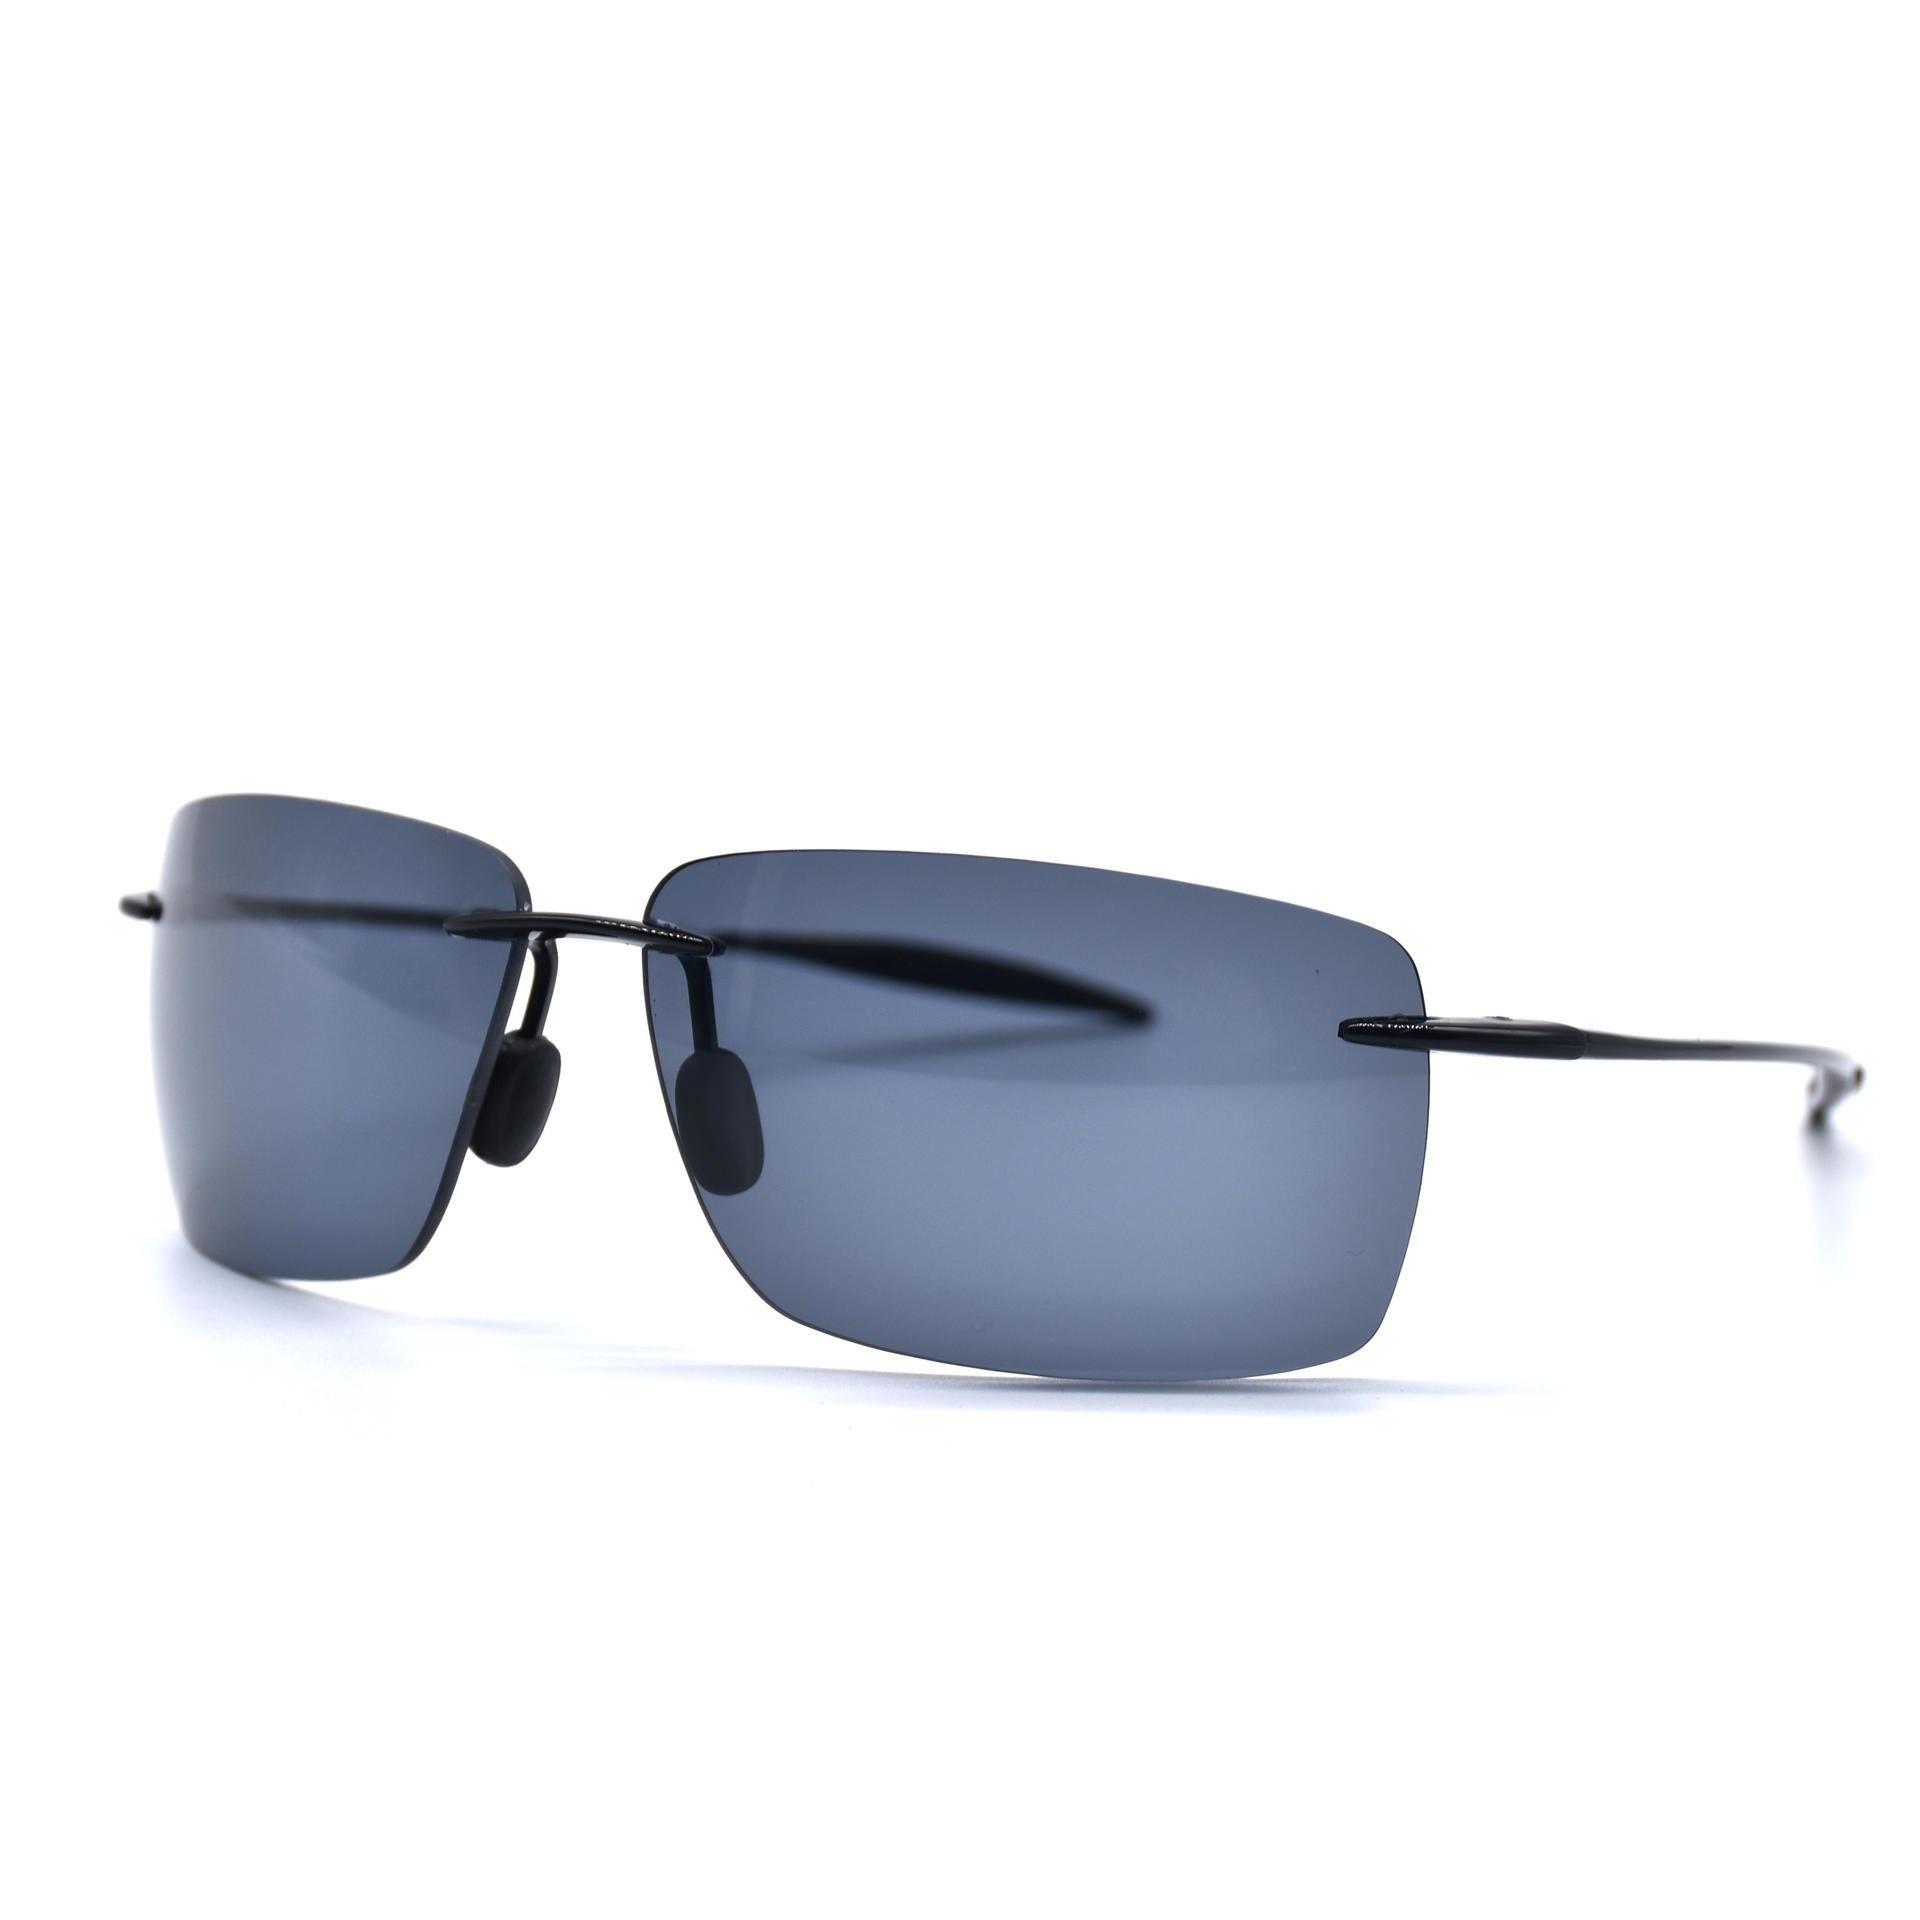 TR90超轻无框偏光太阳眼镜 休闲时尚太阳眼镜 骑行跑步防风眼镜